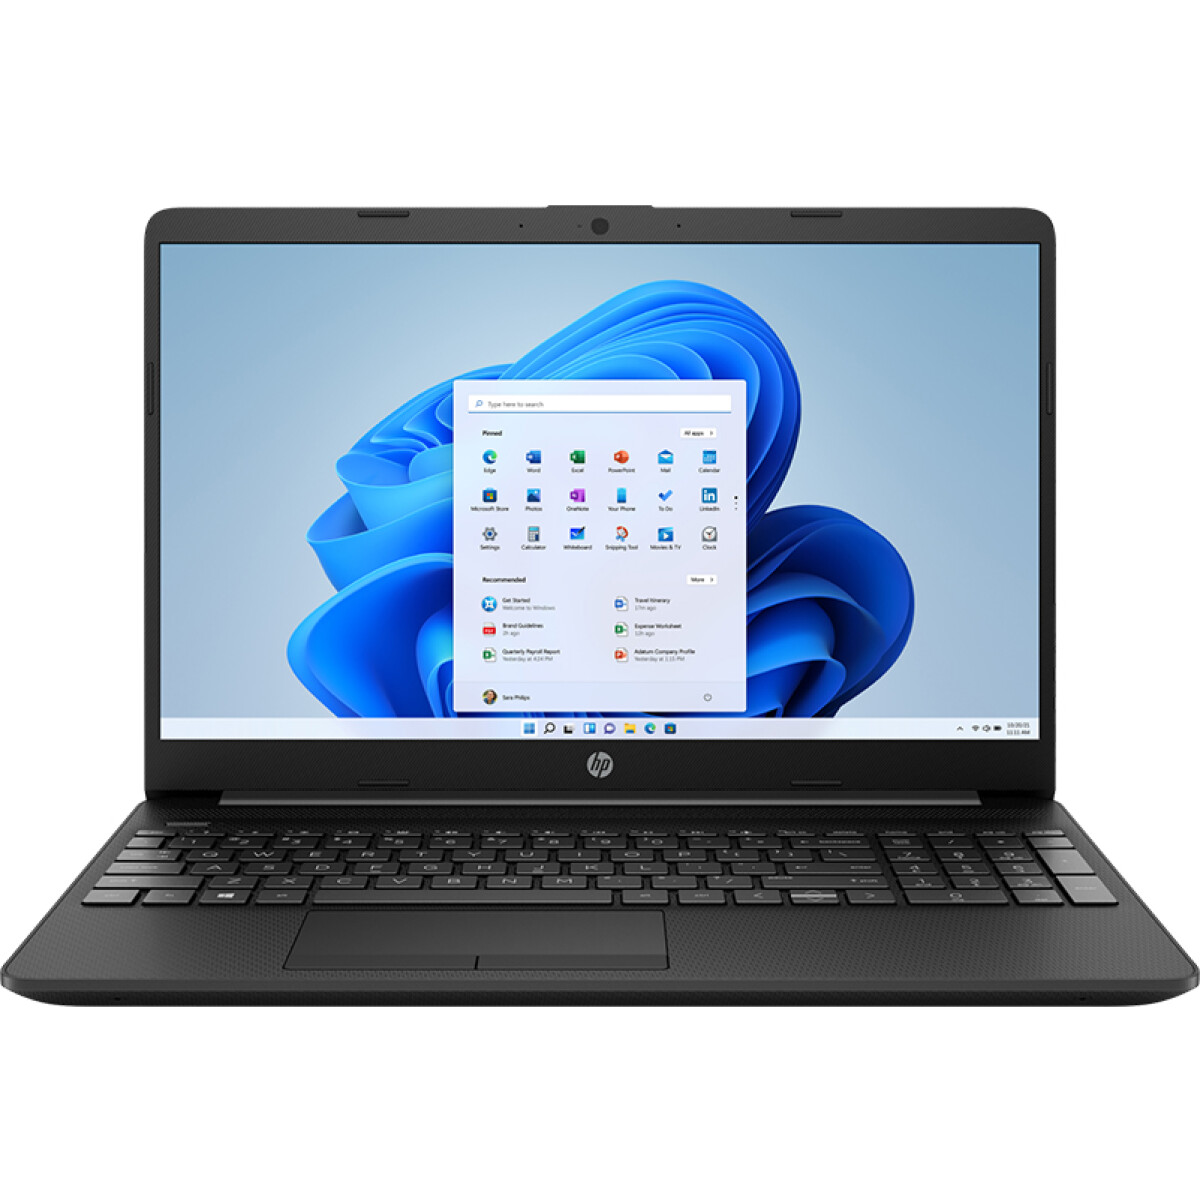 Notebook HP 15T-DW300 i7-1165G7 Jet Black 256GB 8GB 15.6" 